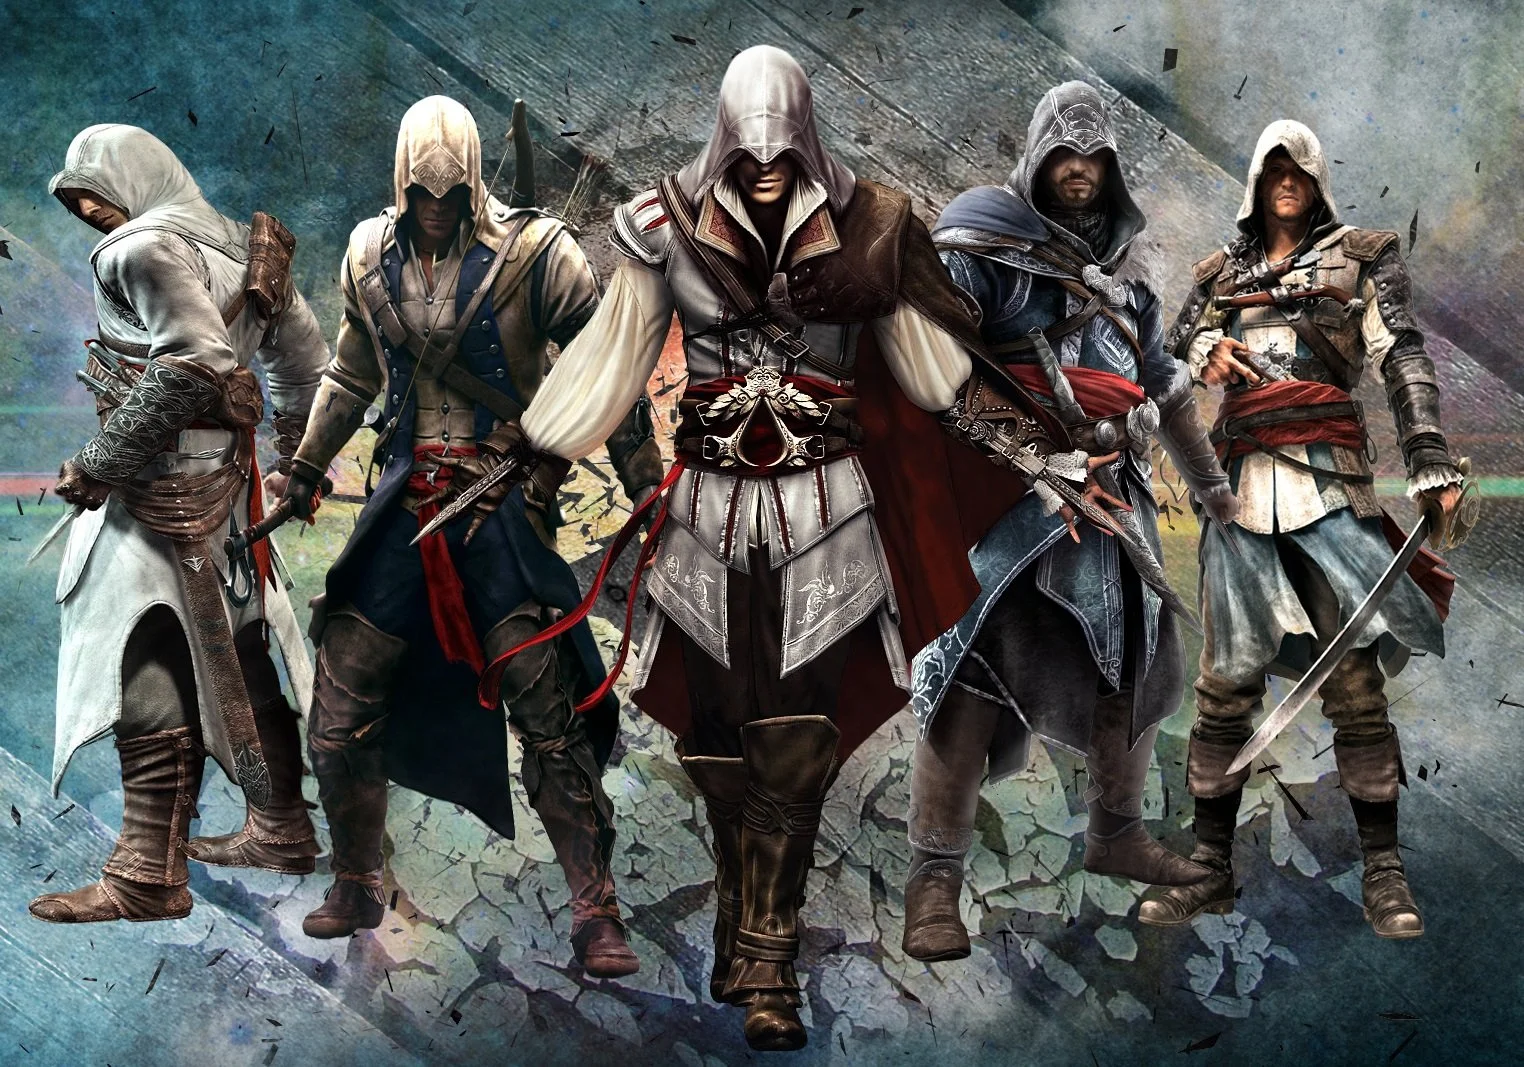 Во многом упрекают серию Assassin’s Creed – серия превратилась в конвейер, ничего нового, кривой стелс, унылая боевая система, и тому подобные грязные инсинуации, не отражающие действительности. И в преддверии выхода Unity я решил рассмотреть самые важные изменения, происшедшие с серией.